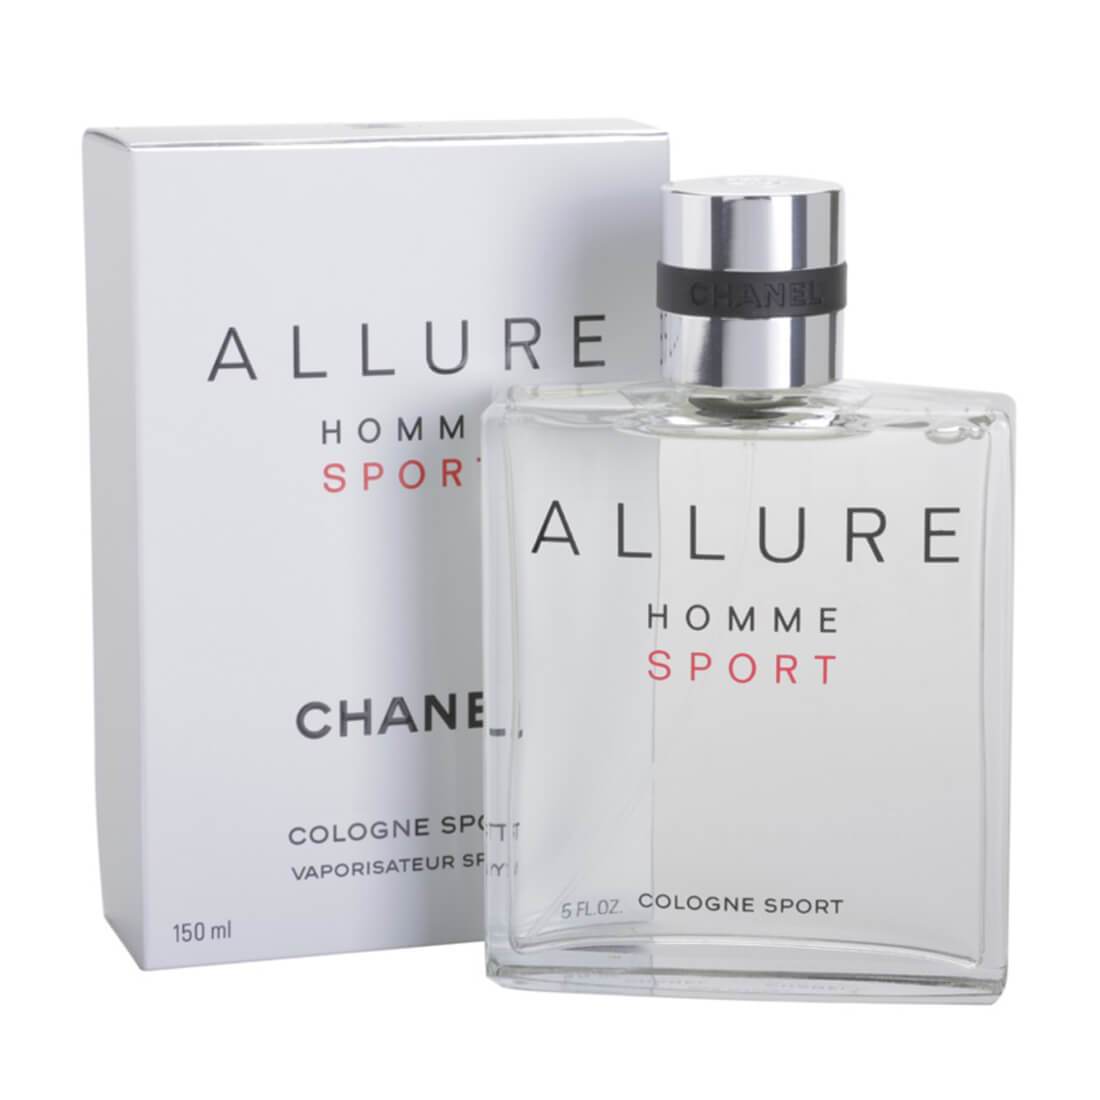 Chanel Allure Homme Sport Cologne Eau De Cologne Perfume For Men ...